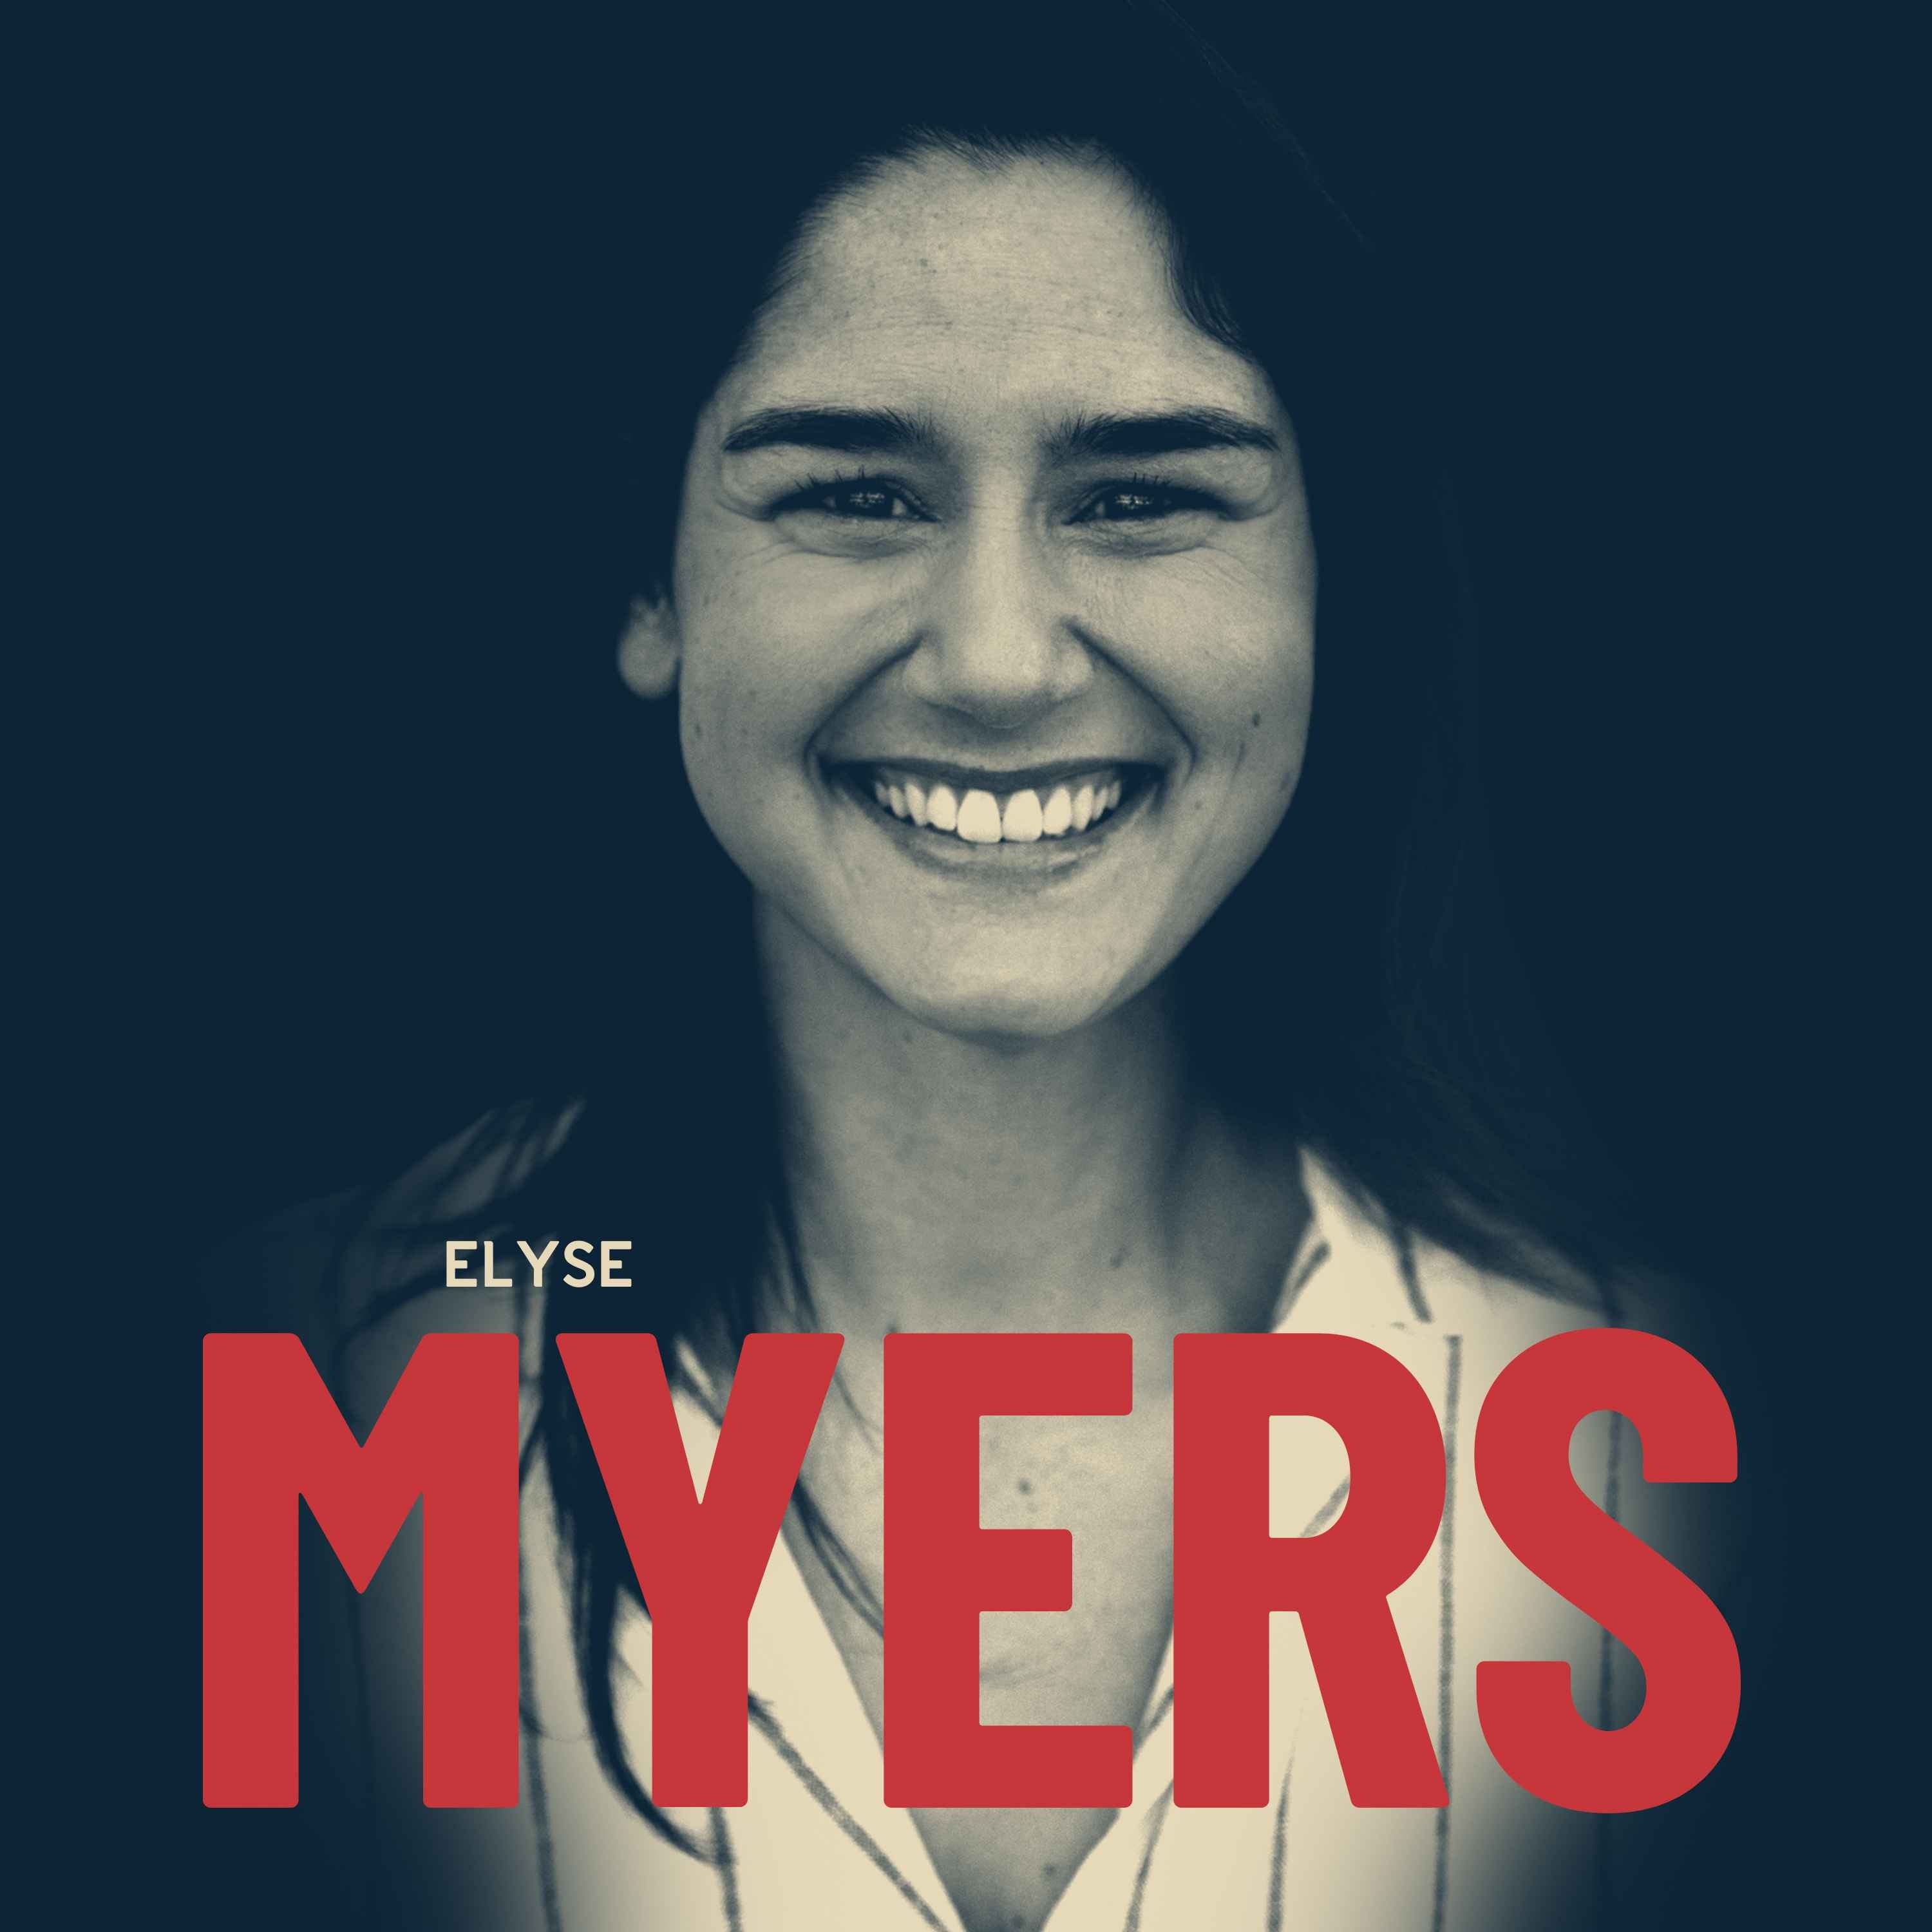 Elyse Myers